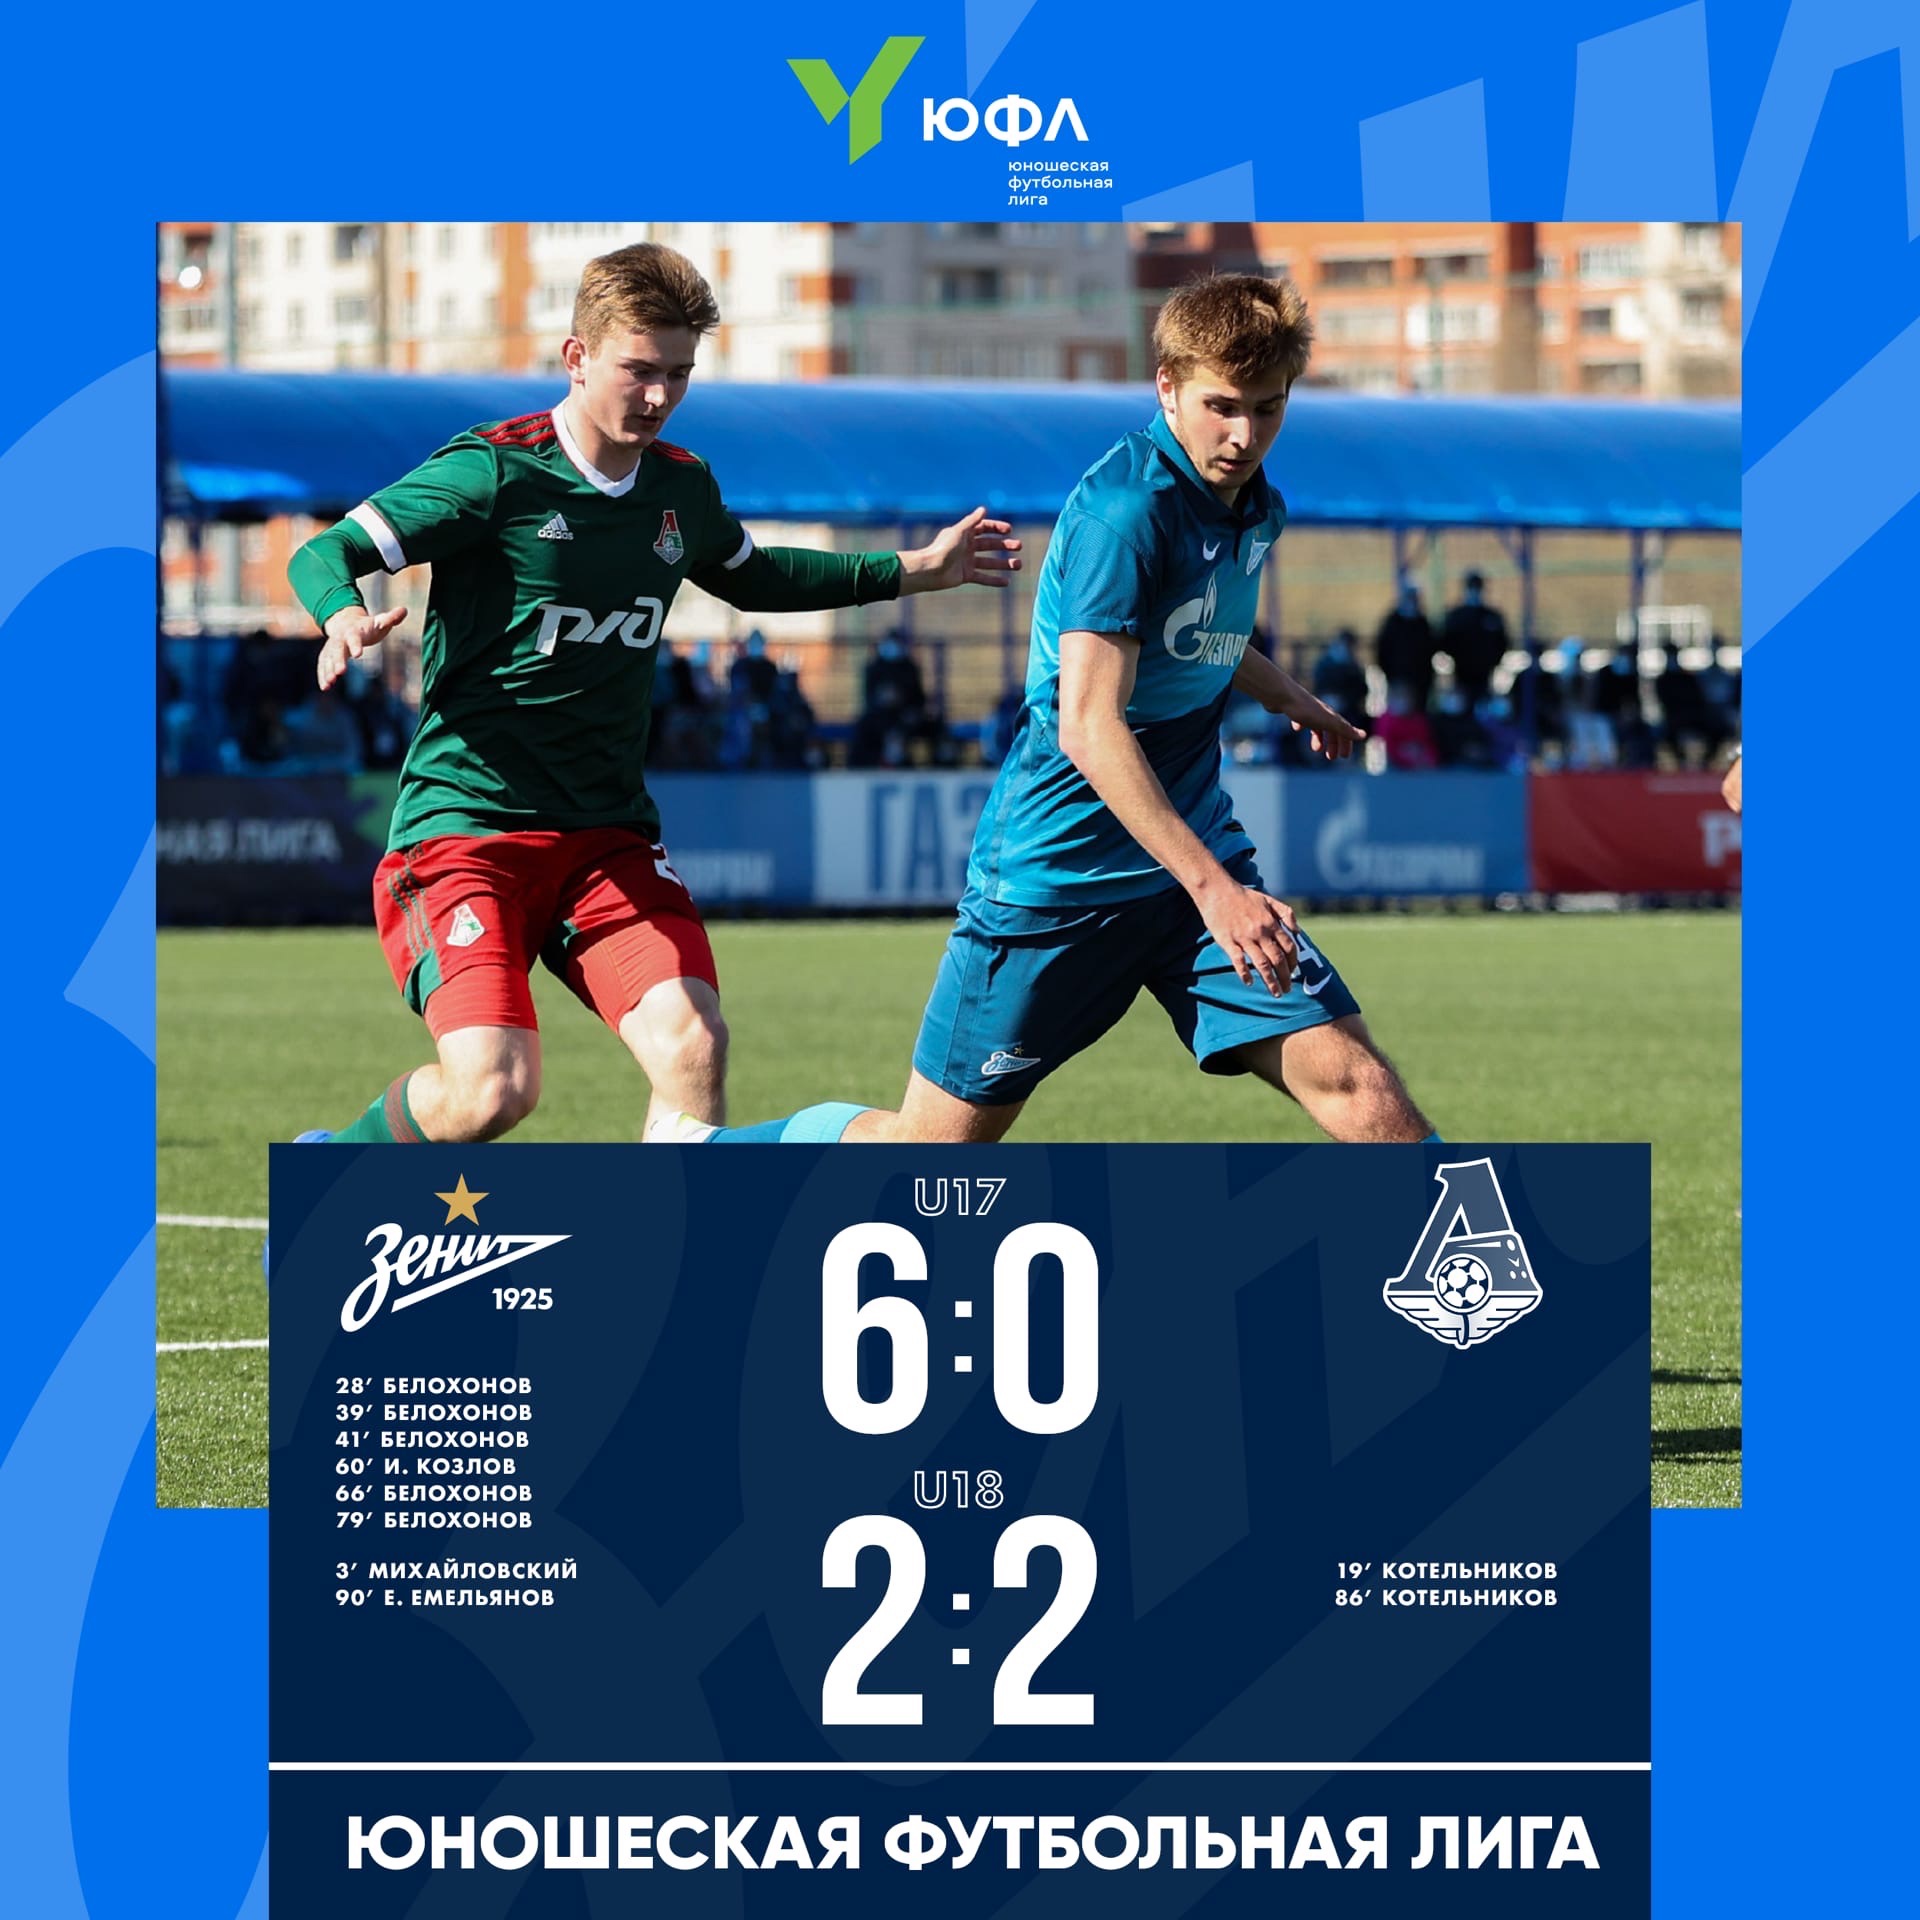 泽尼特U-17和U-18梯队在主场迎战莫斯科火车头足球俱乐部同年龄段梯队。